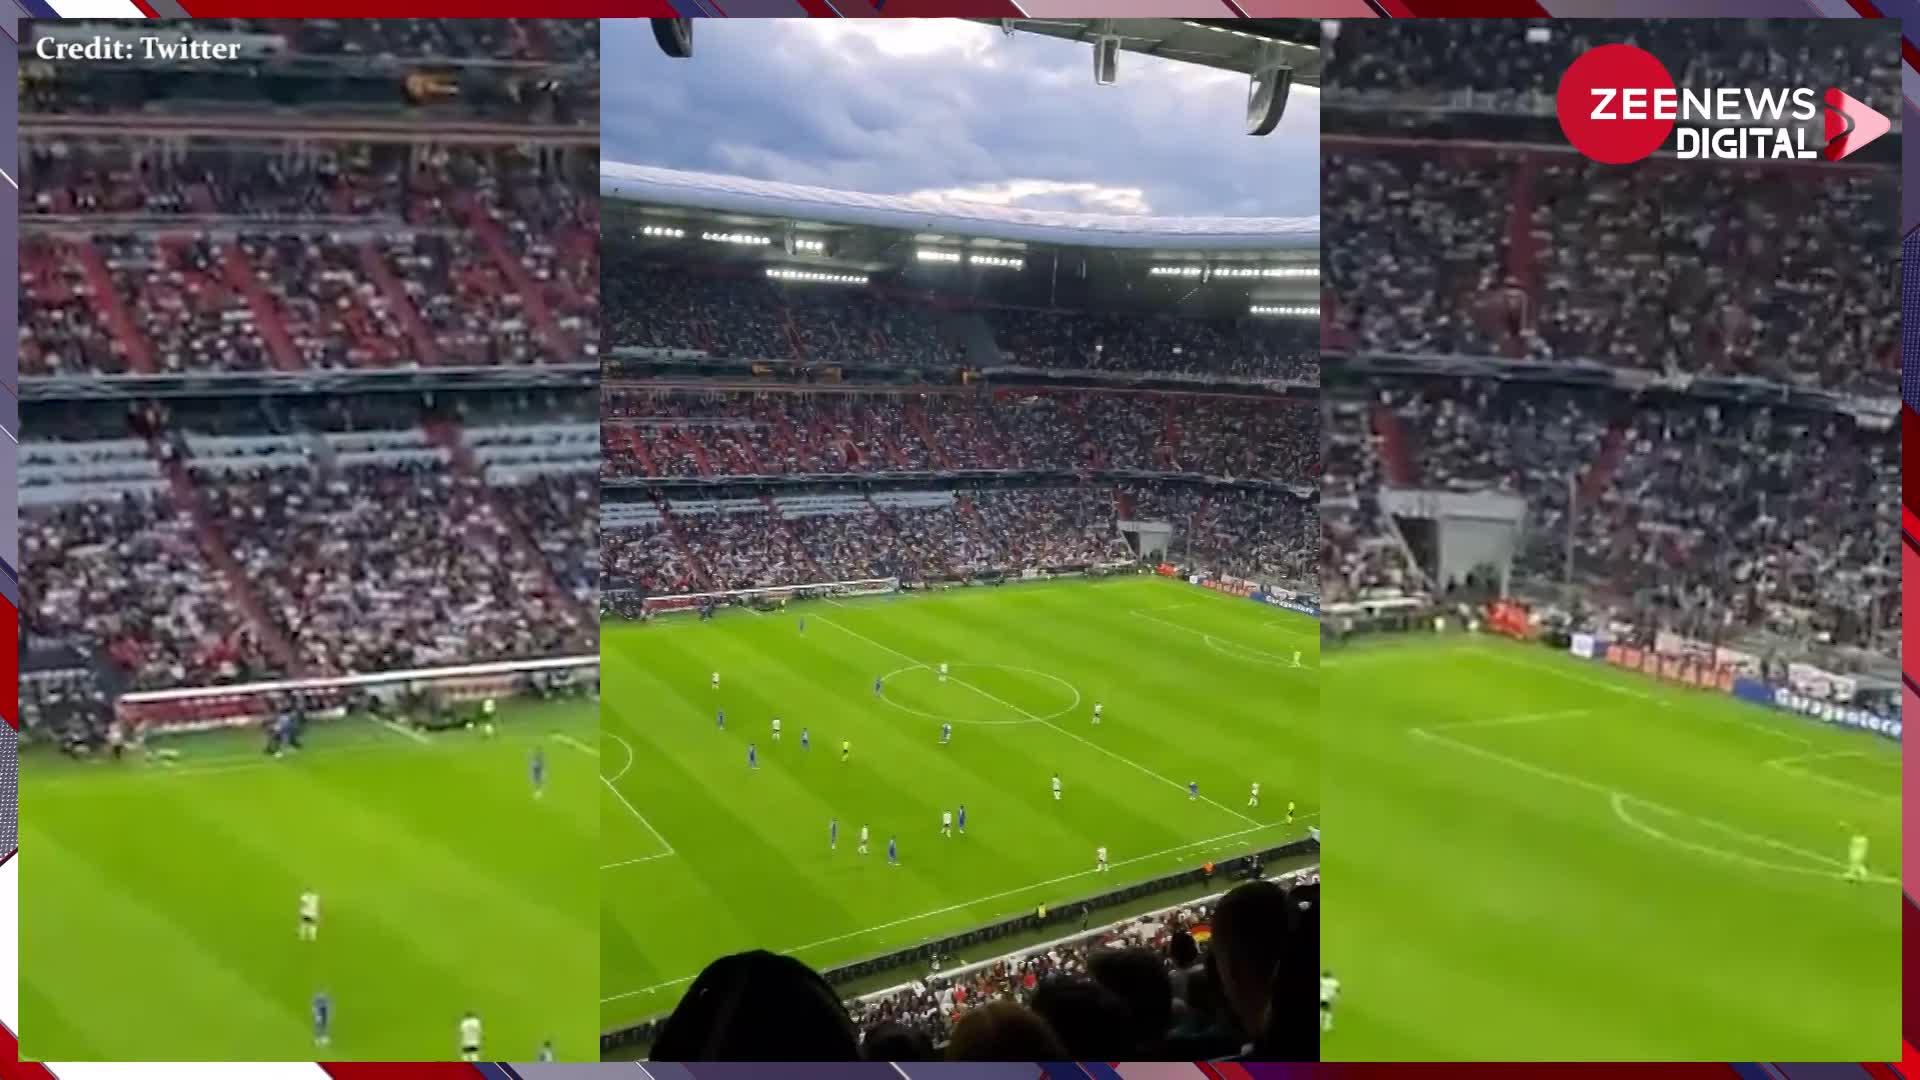 फुटबॉल मैच में युवक ने दर्शक दीर्घा में बैठ-बैठे उड़ाया पेपर प्लेन और कर दिया गोल, देखें मजेदार वीडियो